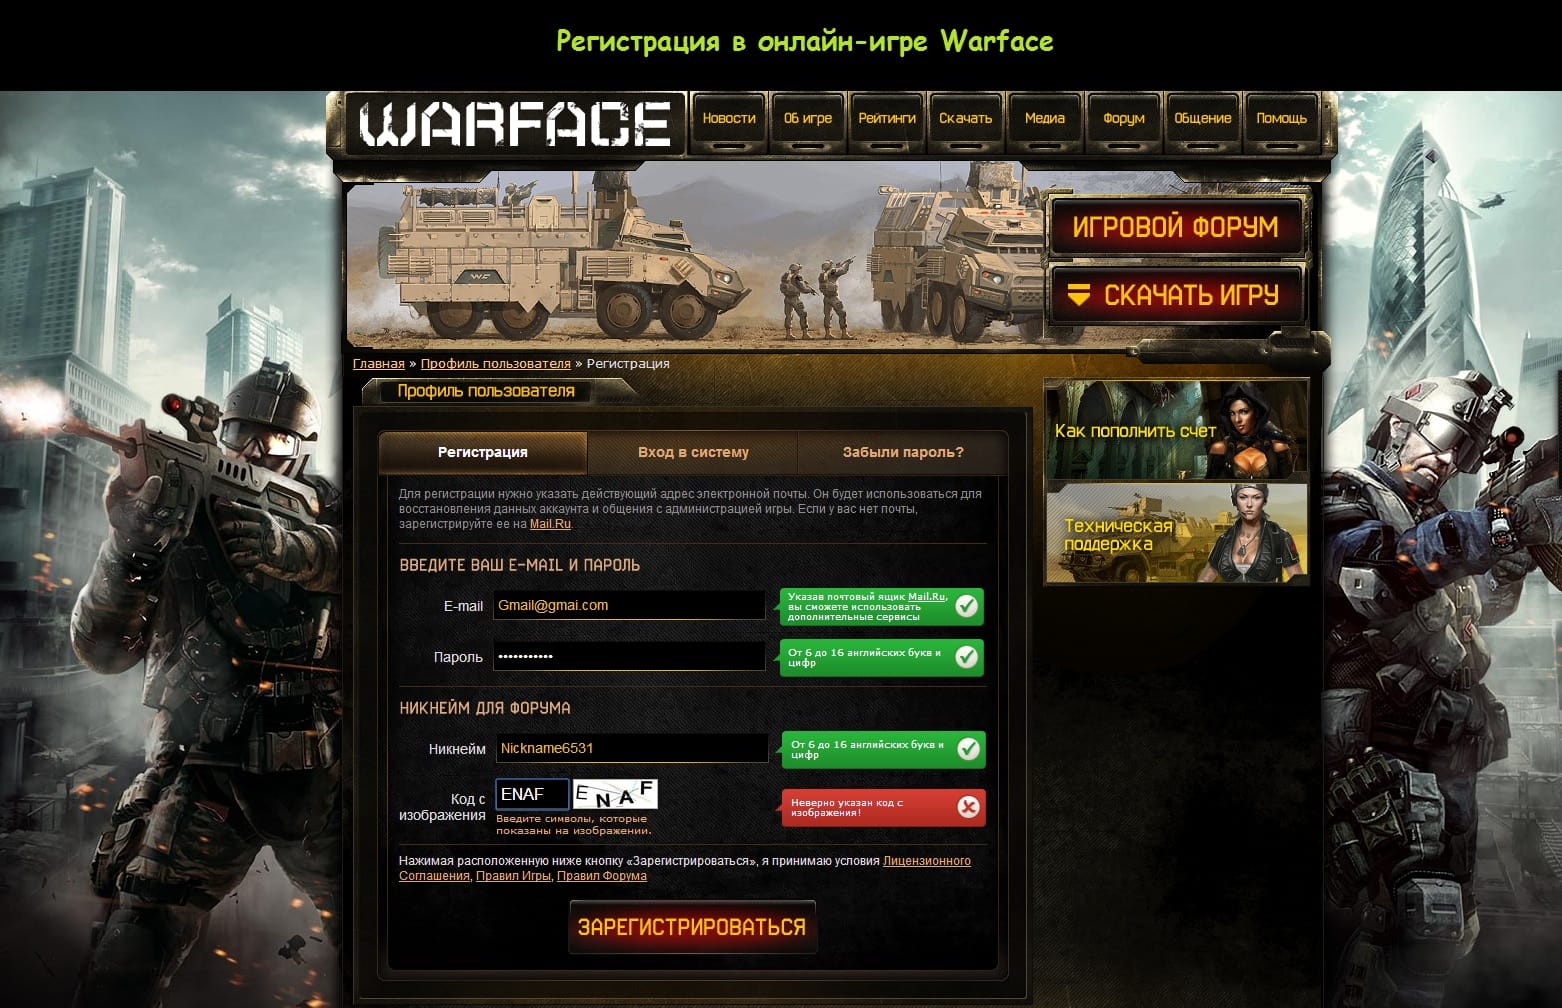 Играть онлайн в Warface регистрация бесплатно вход. 